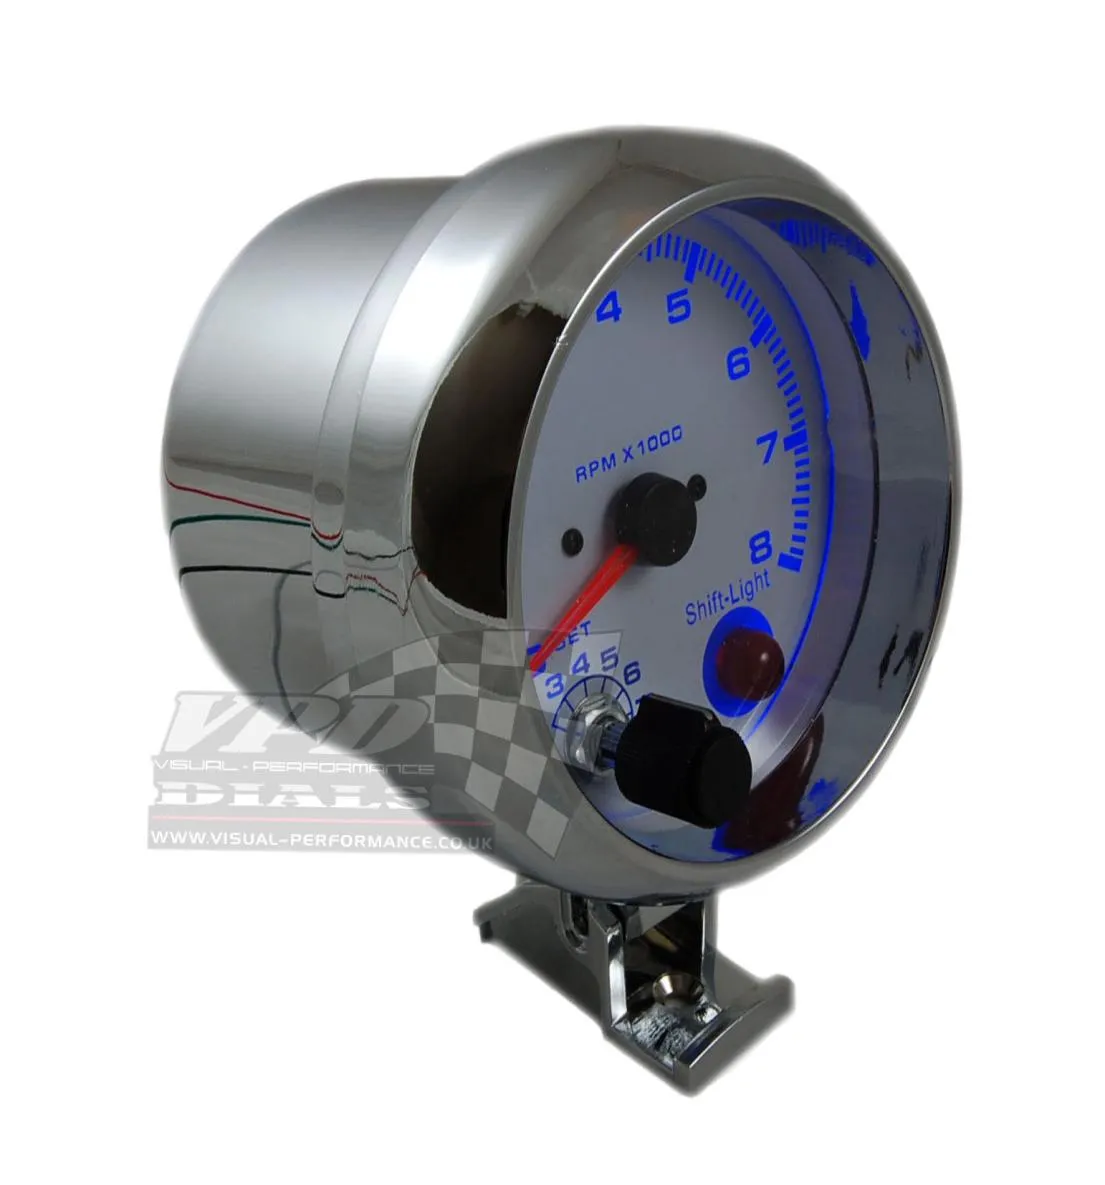 375039039 80mm 08000 GUAGGIO BLUIT BLUE LED LED LIGHTO METTER RPM RPM RPM con calibro automobilistico della luce rpm 5691616